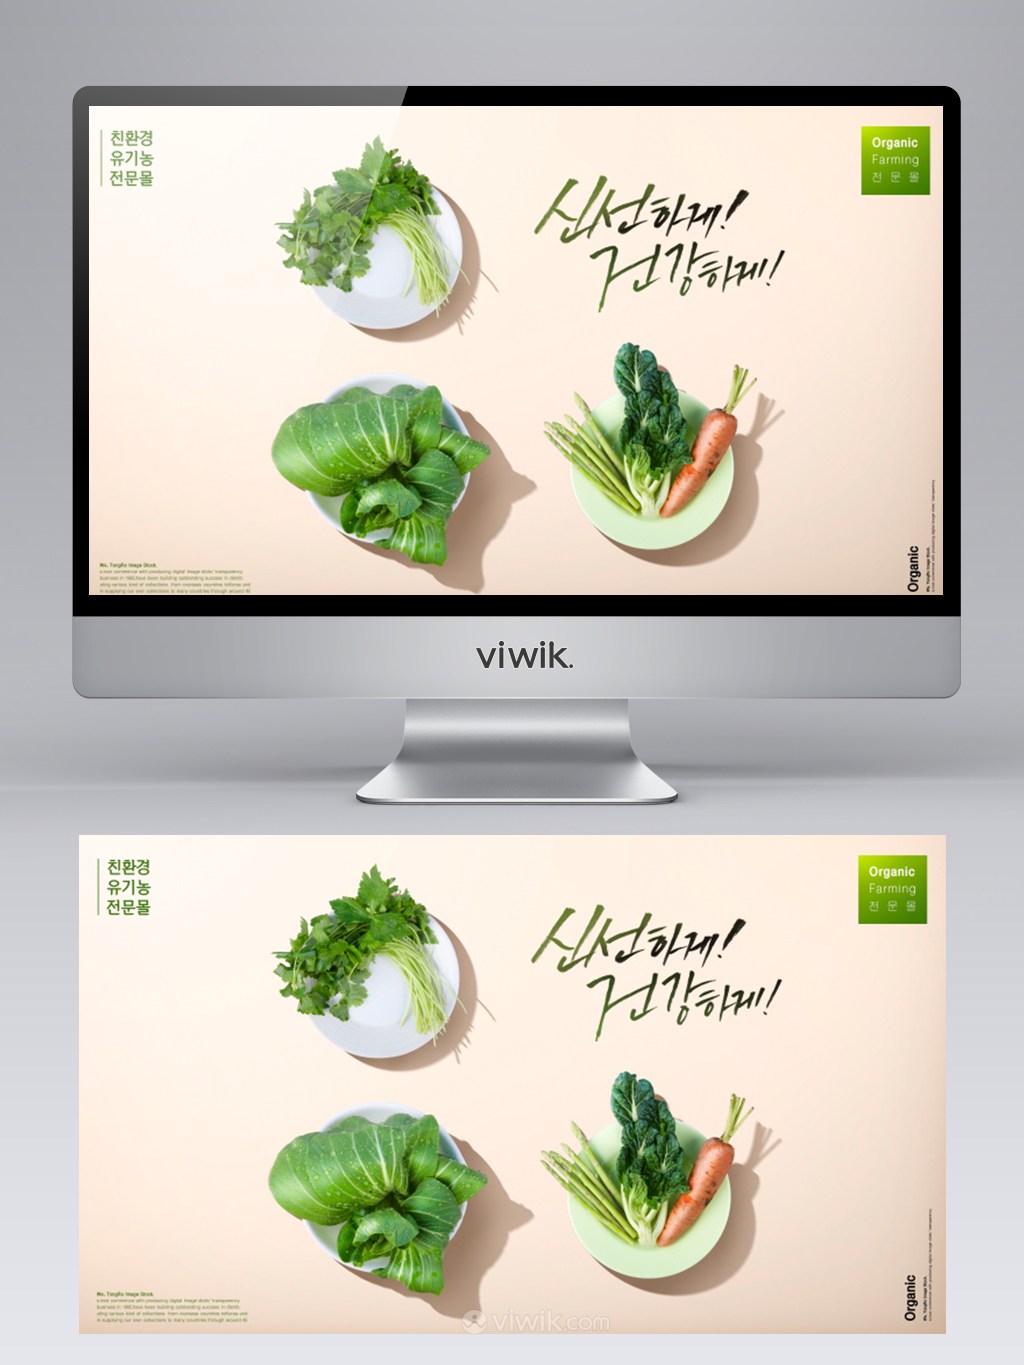 新鲜有机蔬菜白菜背景banner设计